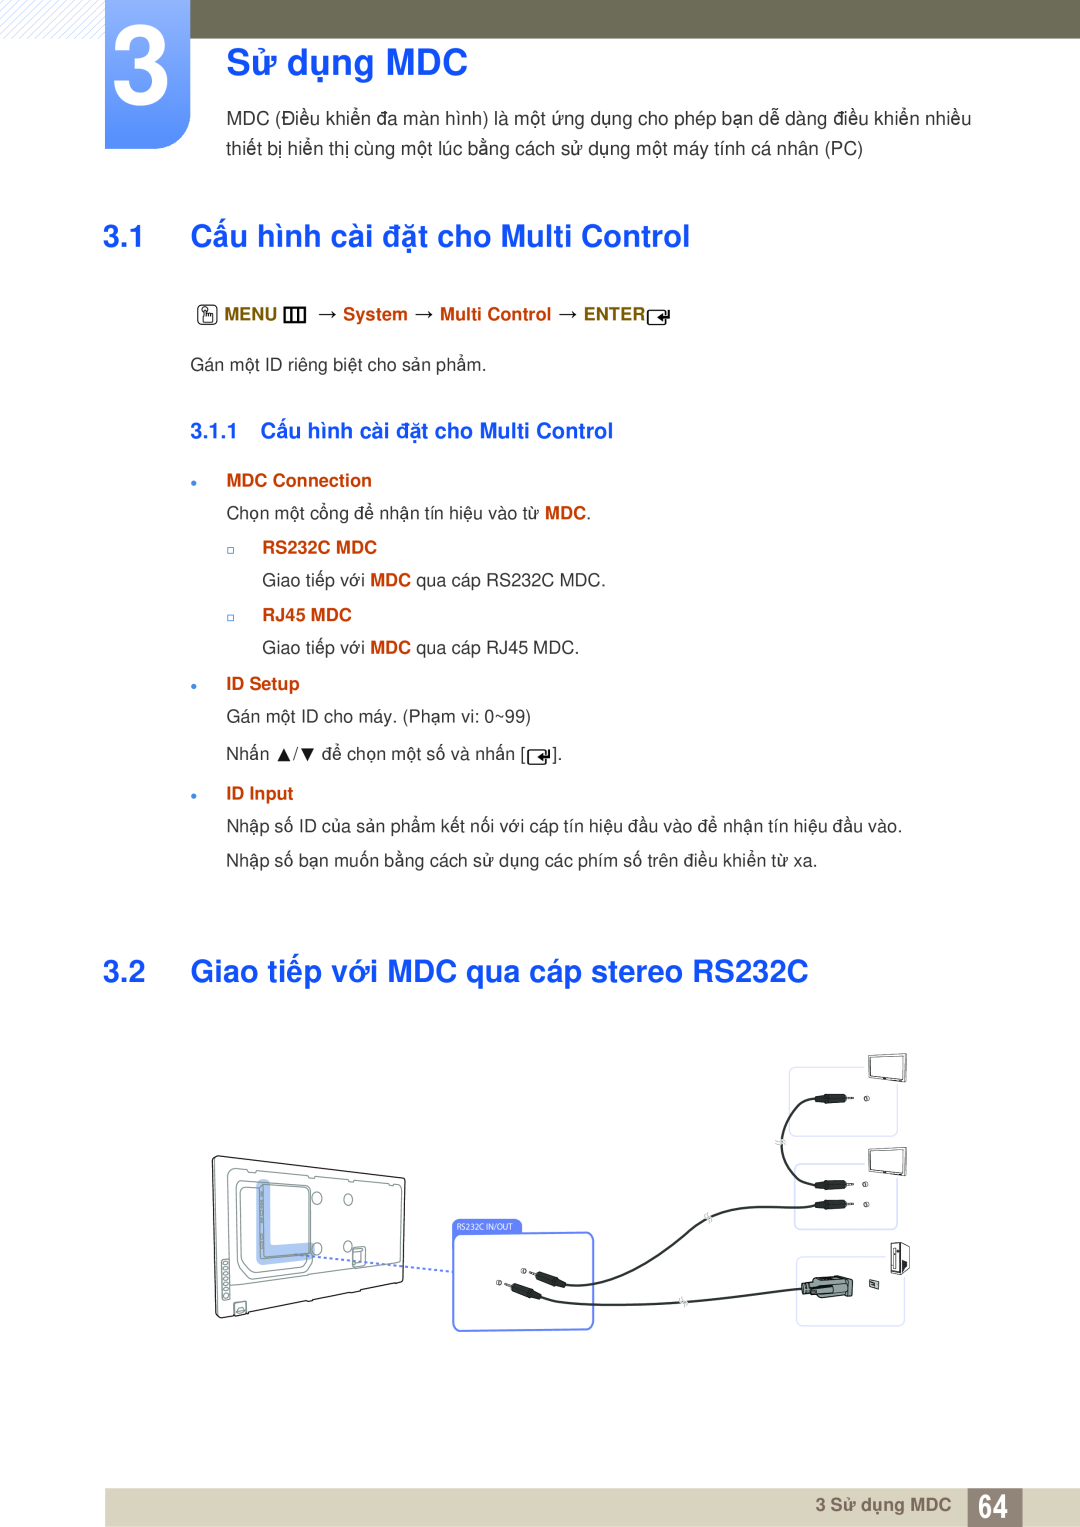 Samsung LH55UEAPLGC/XY 3 Sử dụng MDC, 3.1 Cấu hình cài đặt cho Multi Control, Giao tiếp với MDC qua cáp stereo RS232C 